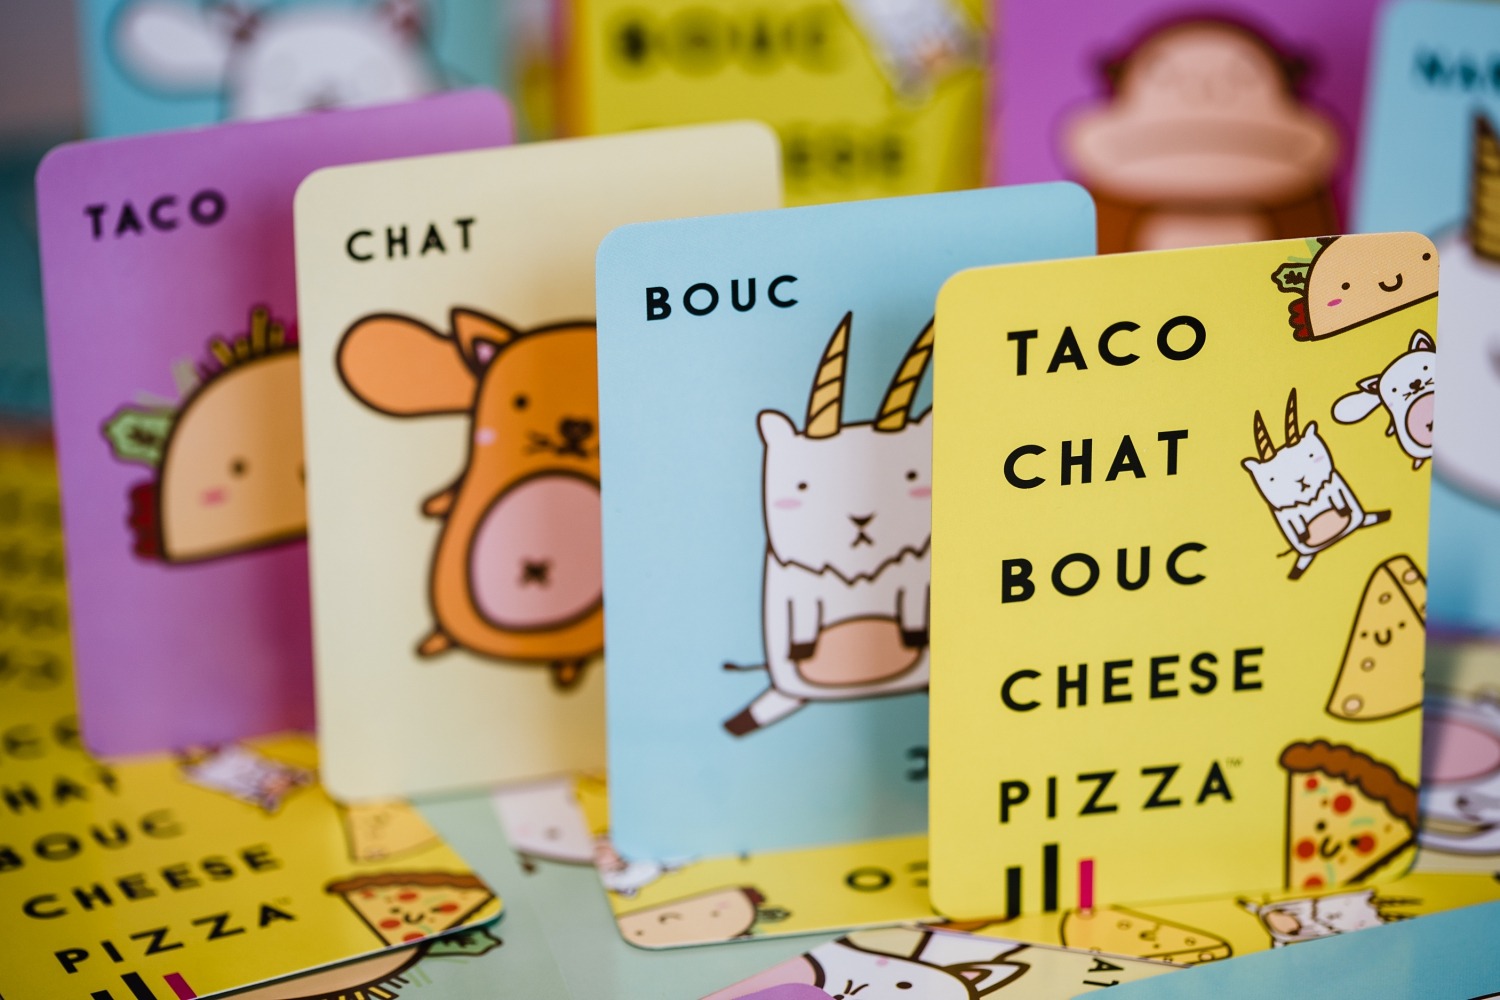 Taco chat bouc cheese pizza blue orange jeu de société boardgame tribuo